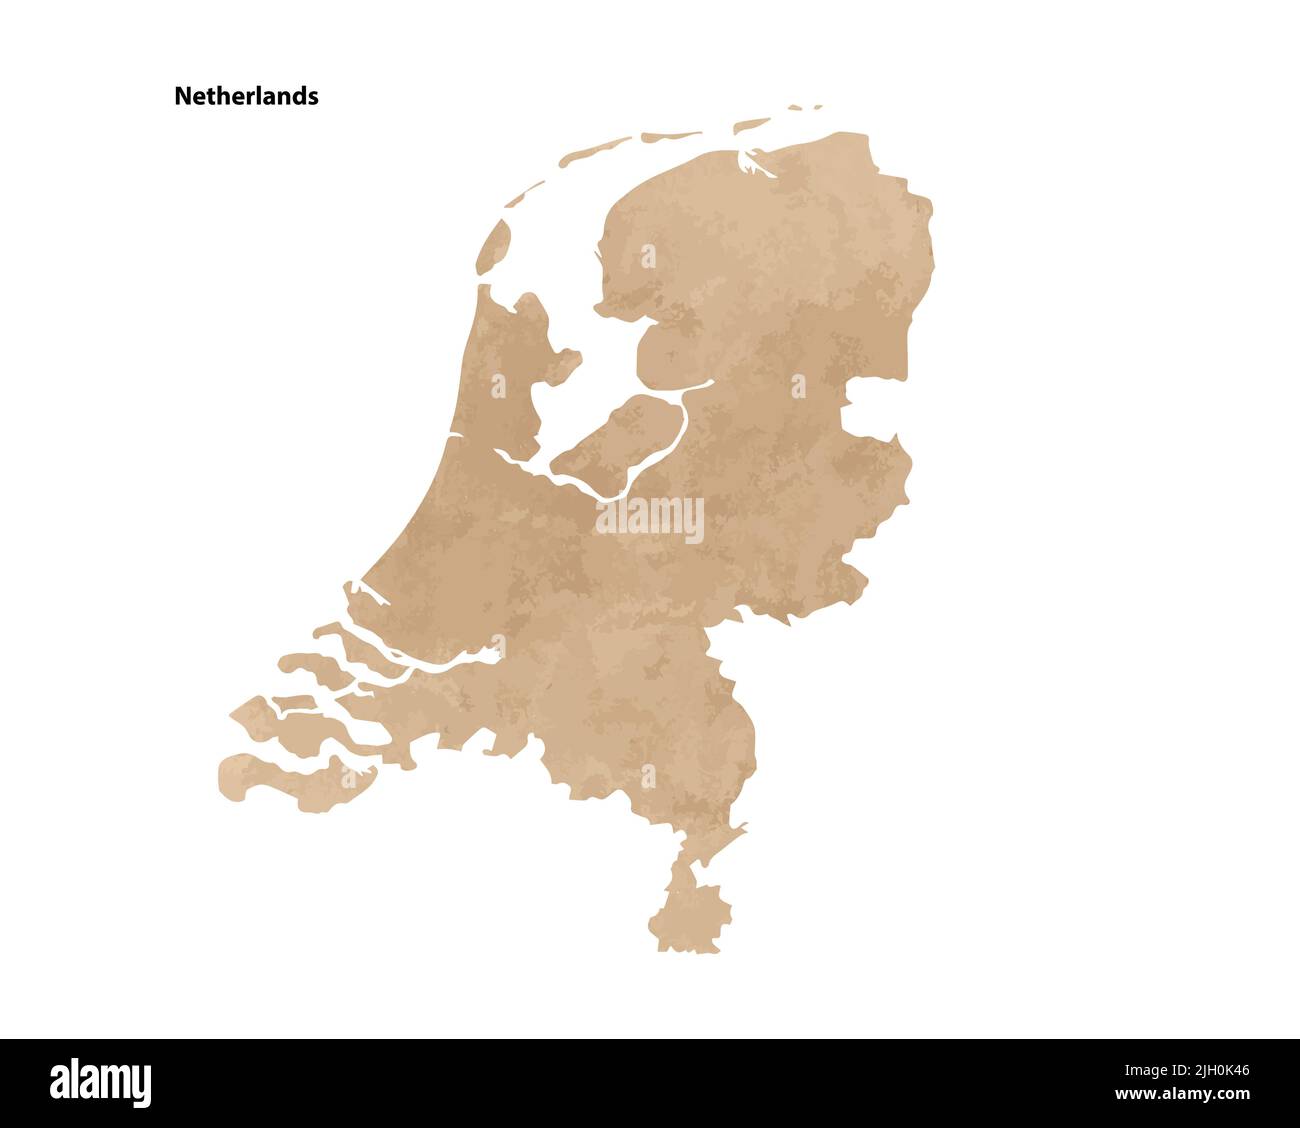 Antiguo papel vintage mapa texturizado de Países Bajos - ilustración de vectores Ilustración del Vector